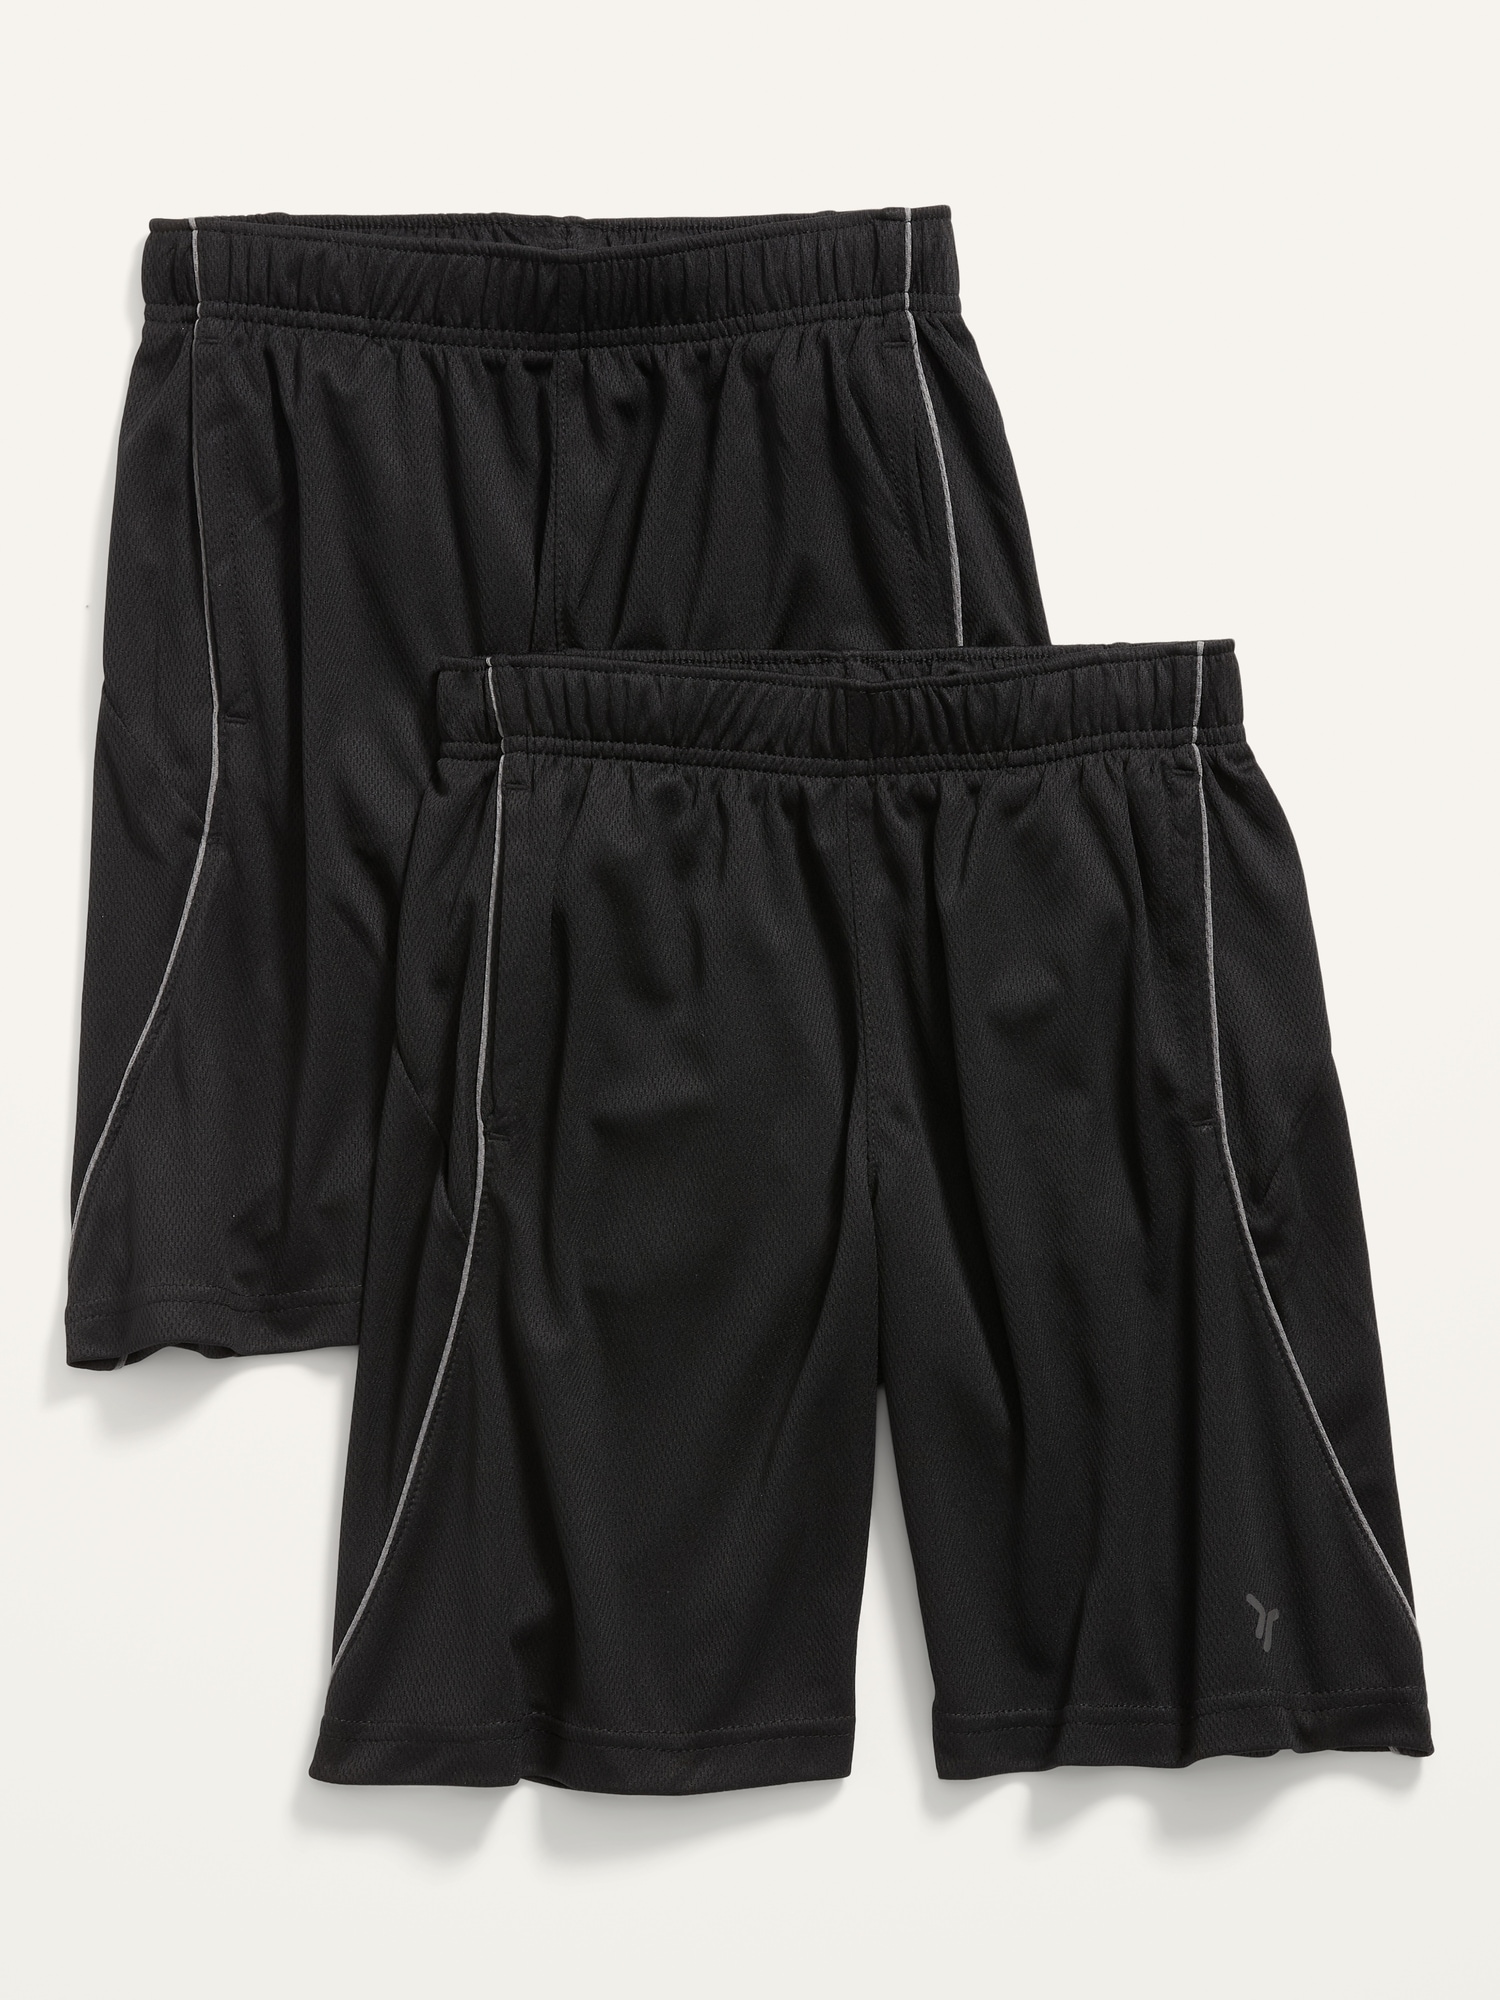 Old Navy Go-Dry Mesh Shorts 2-Pack for Boys black. 1